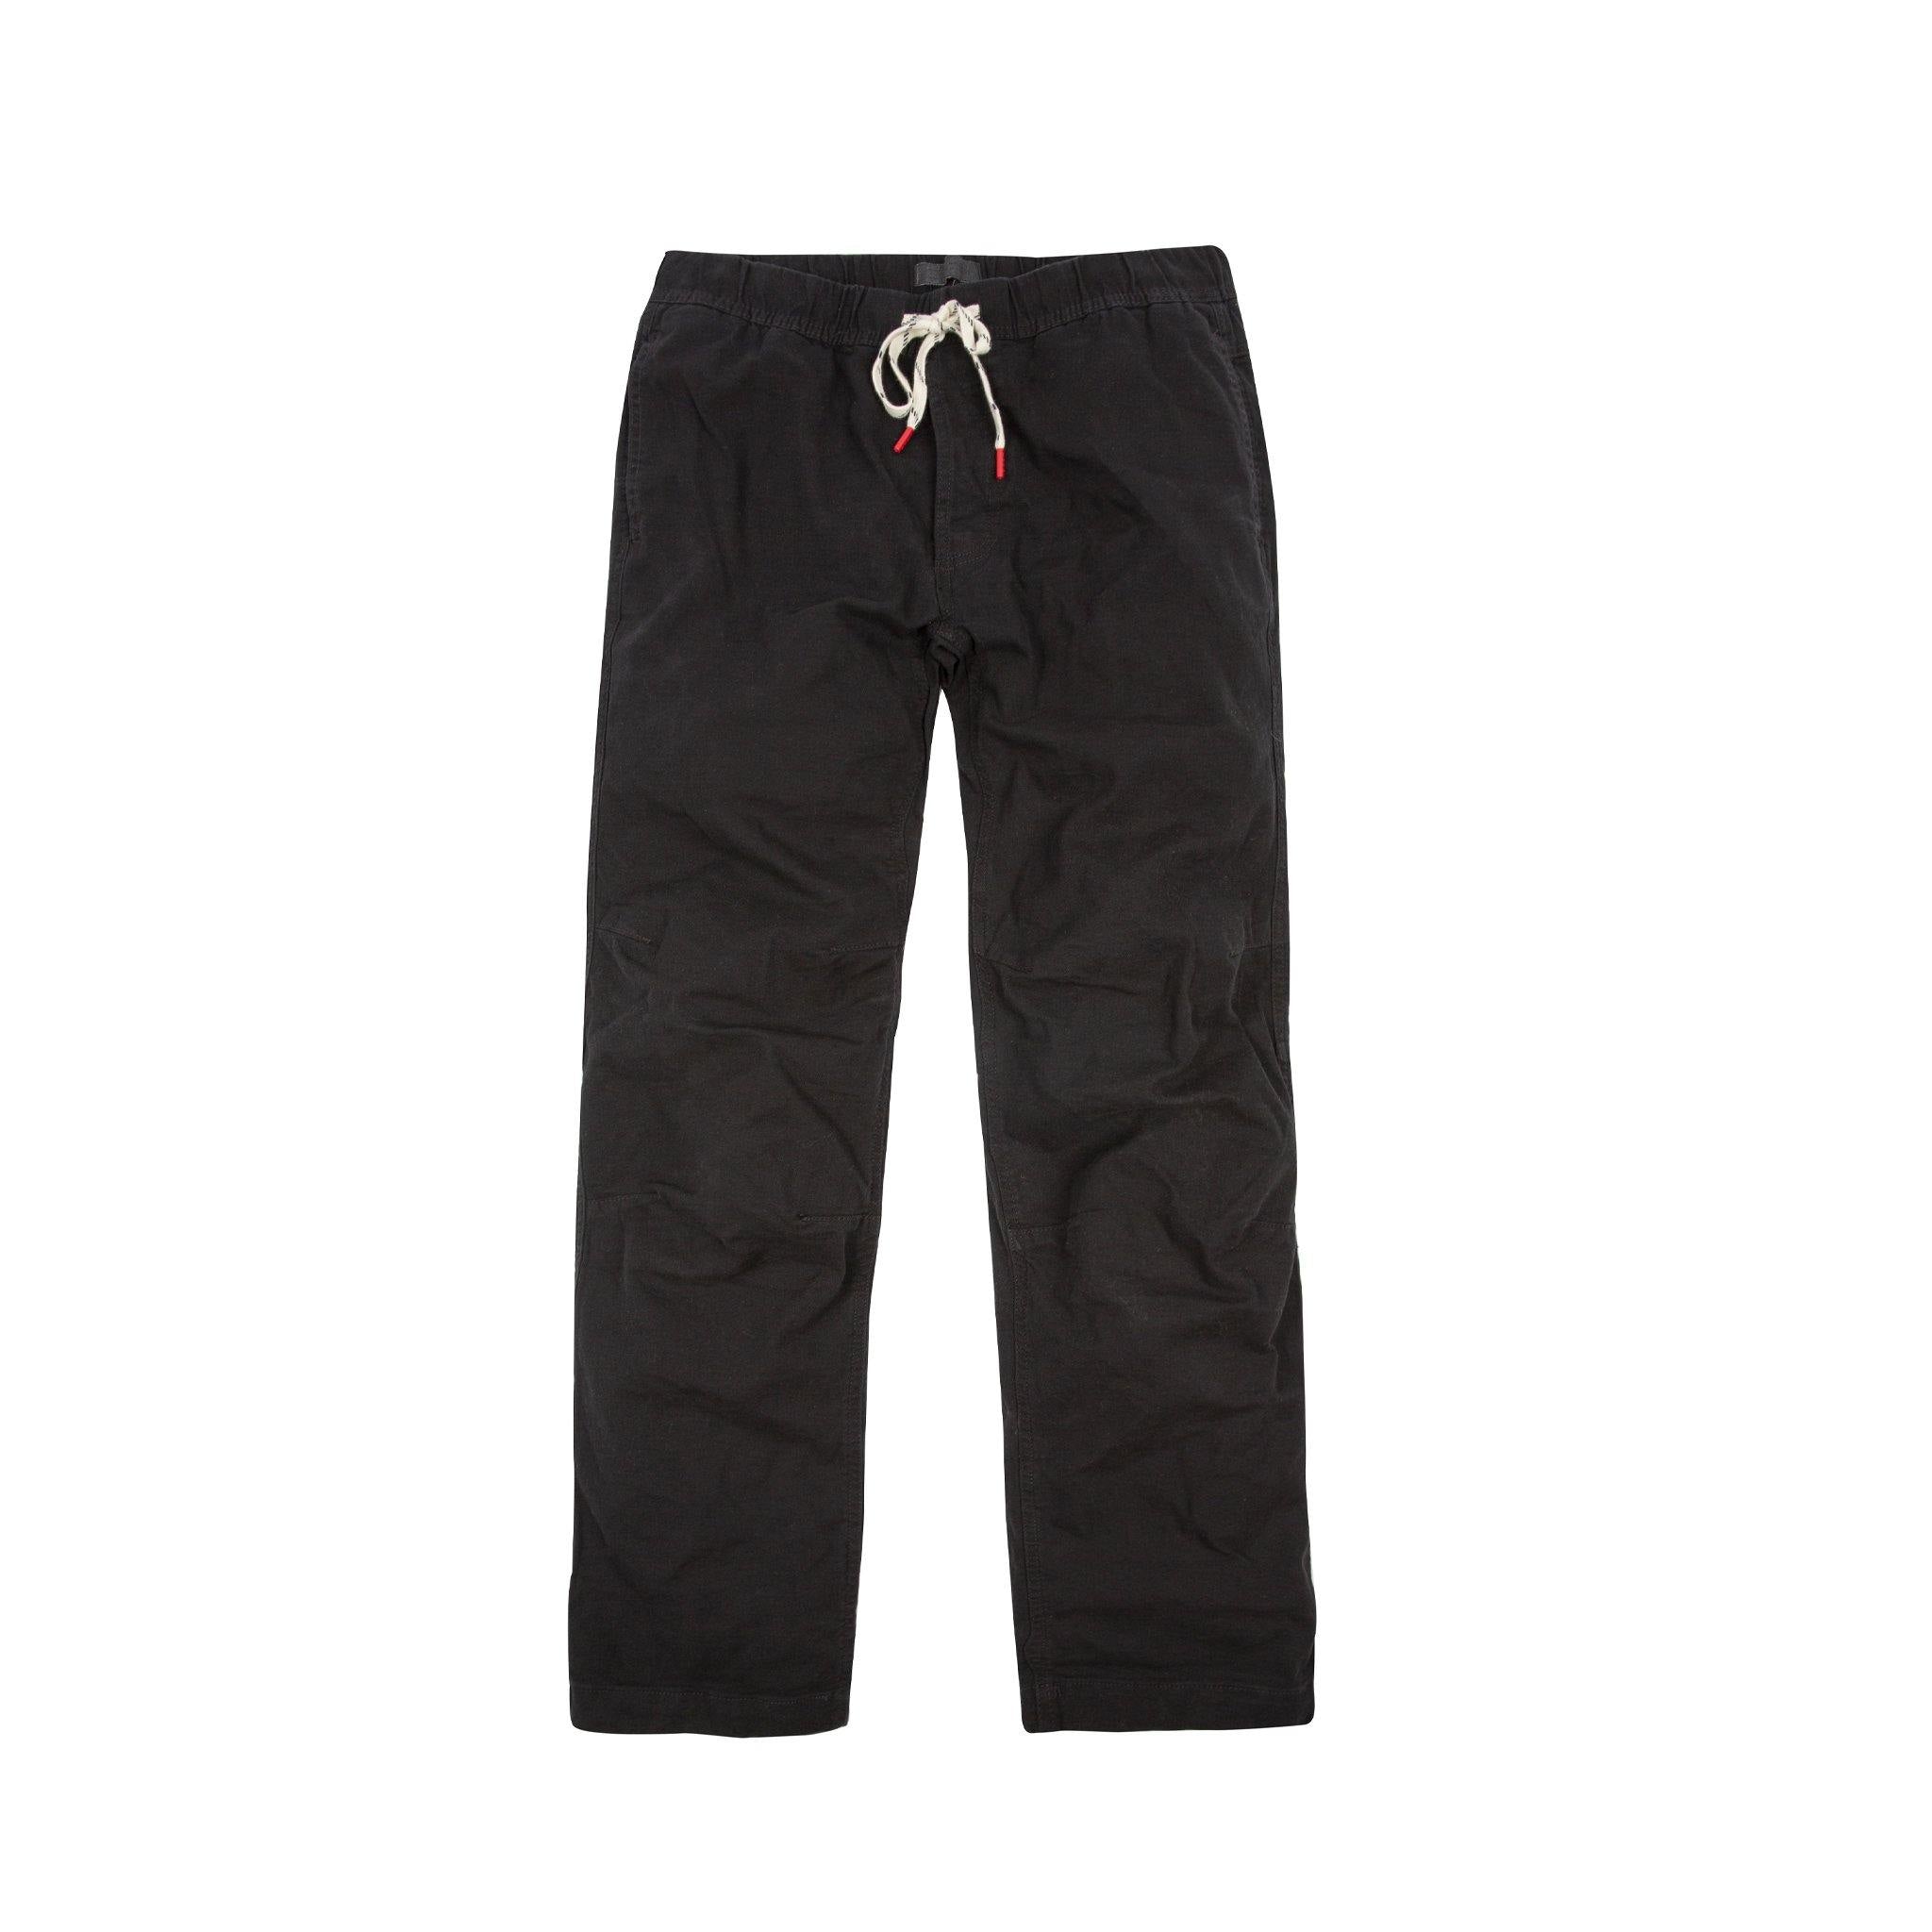 Black Low Crotch Pants Organic Cotton Lycra